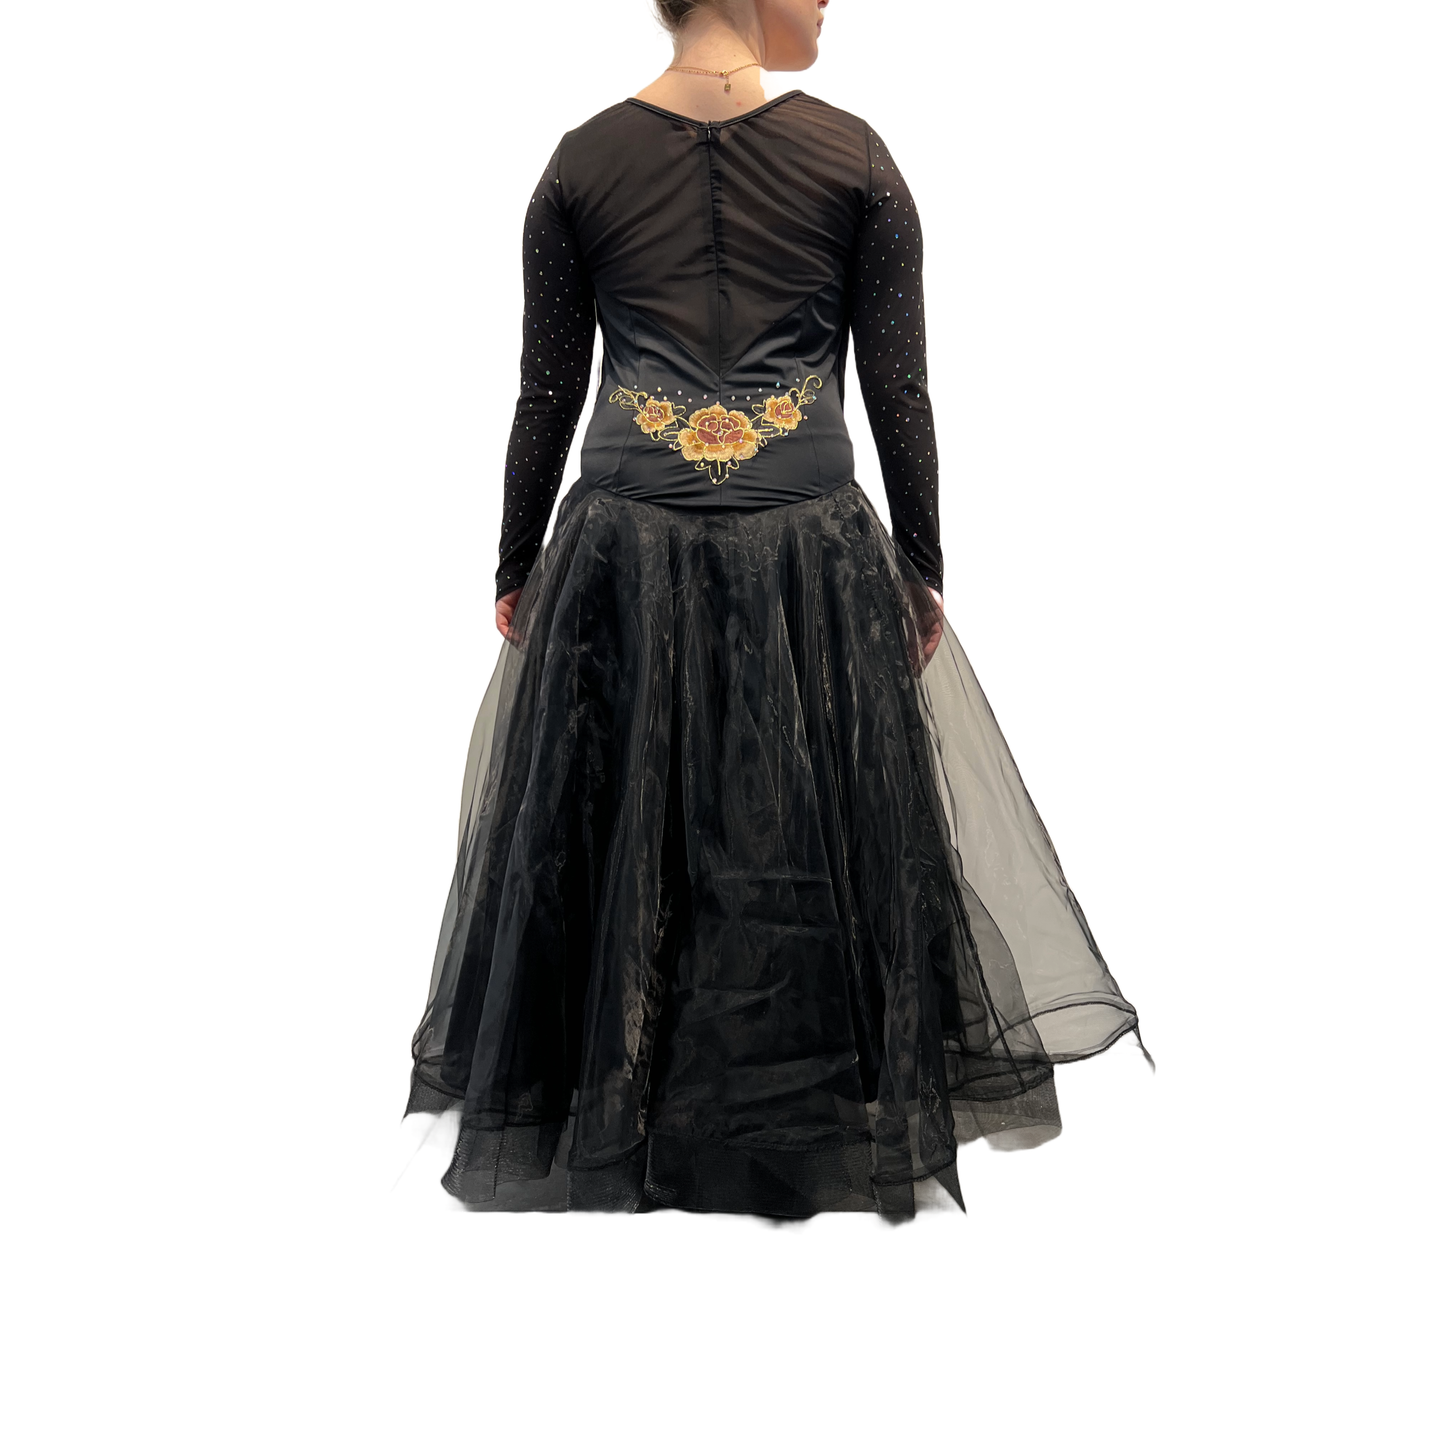 Black Full Length Ballroom Gown